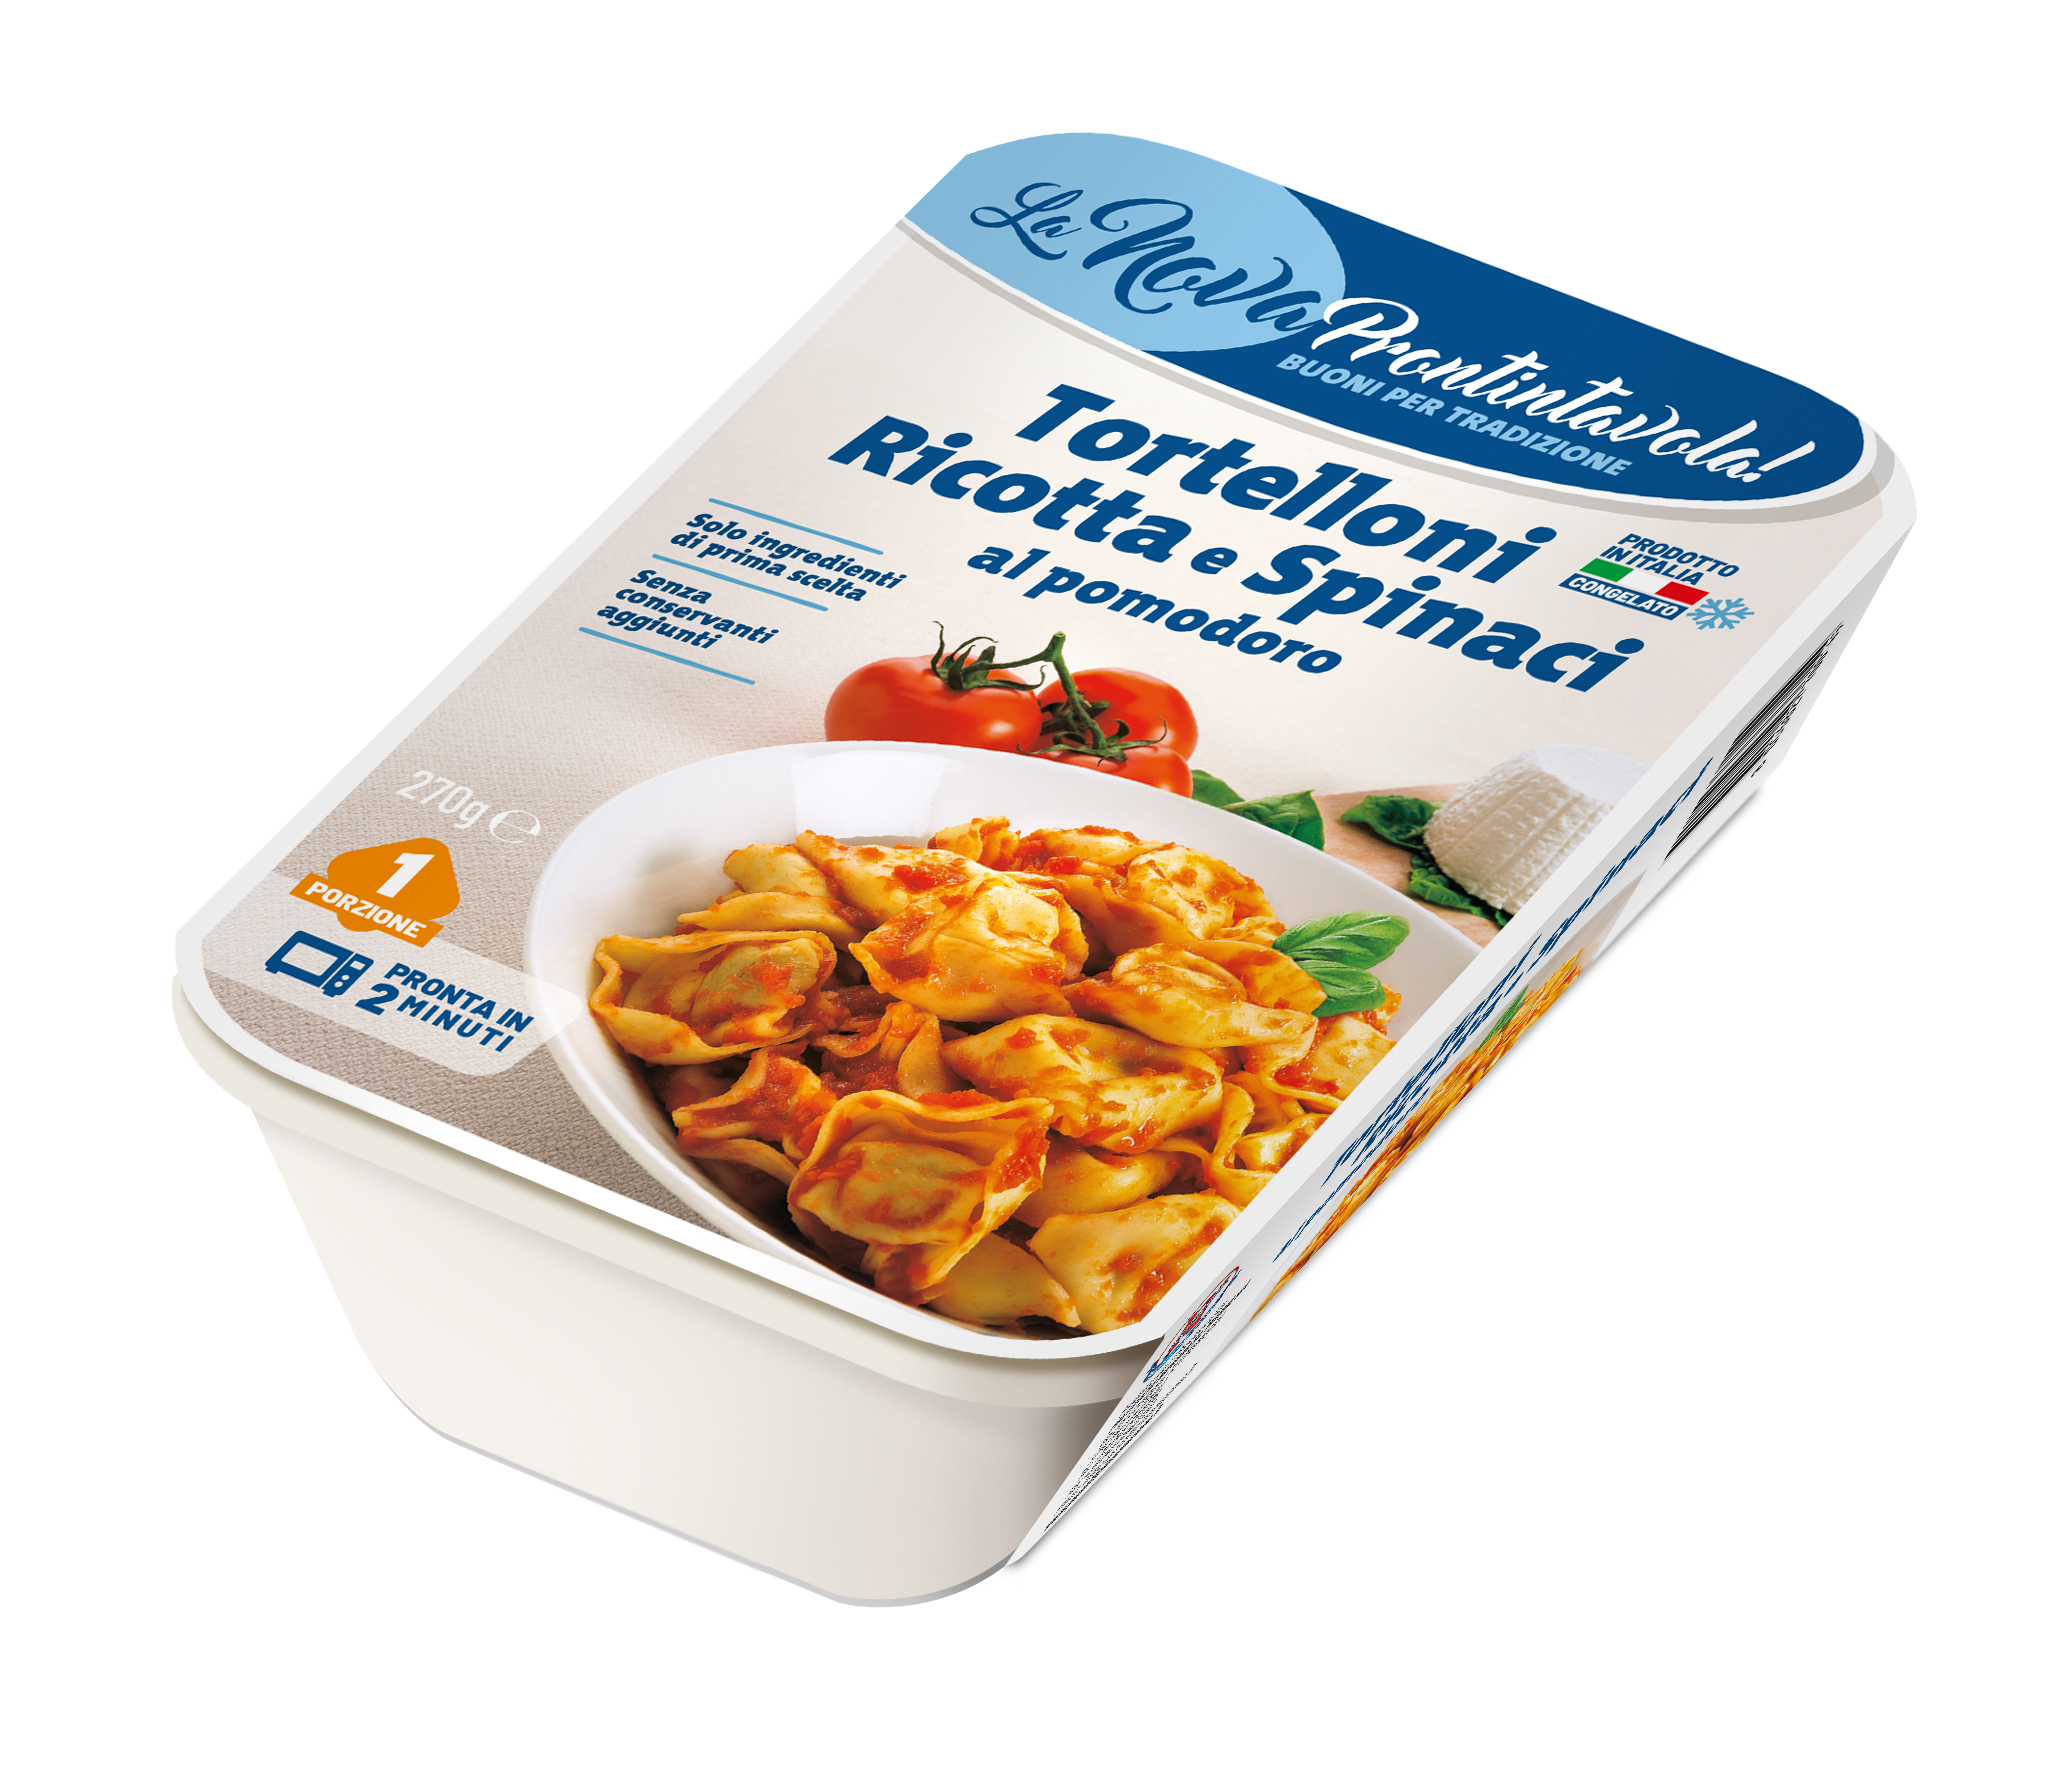 Tortelloni ricotta spinaci <br>al pomodoro